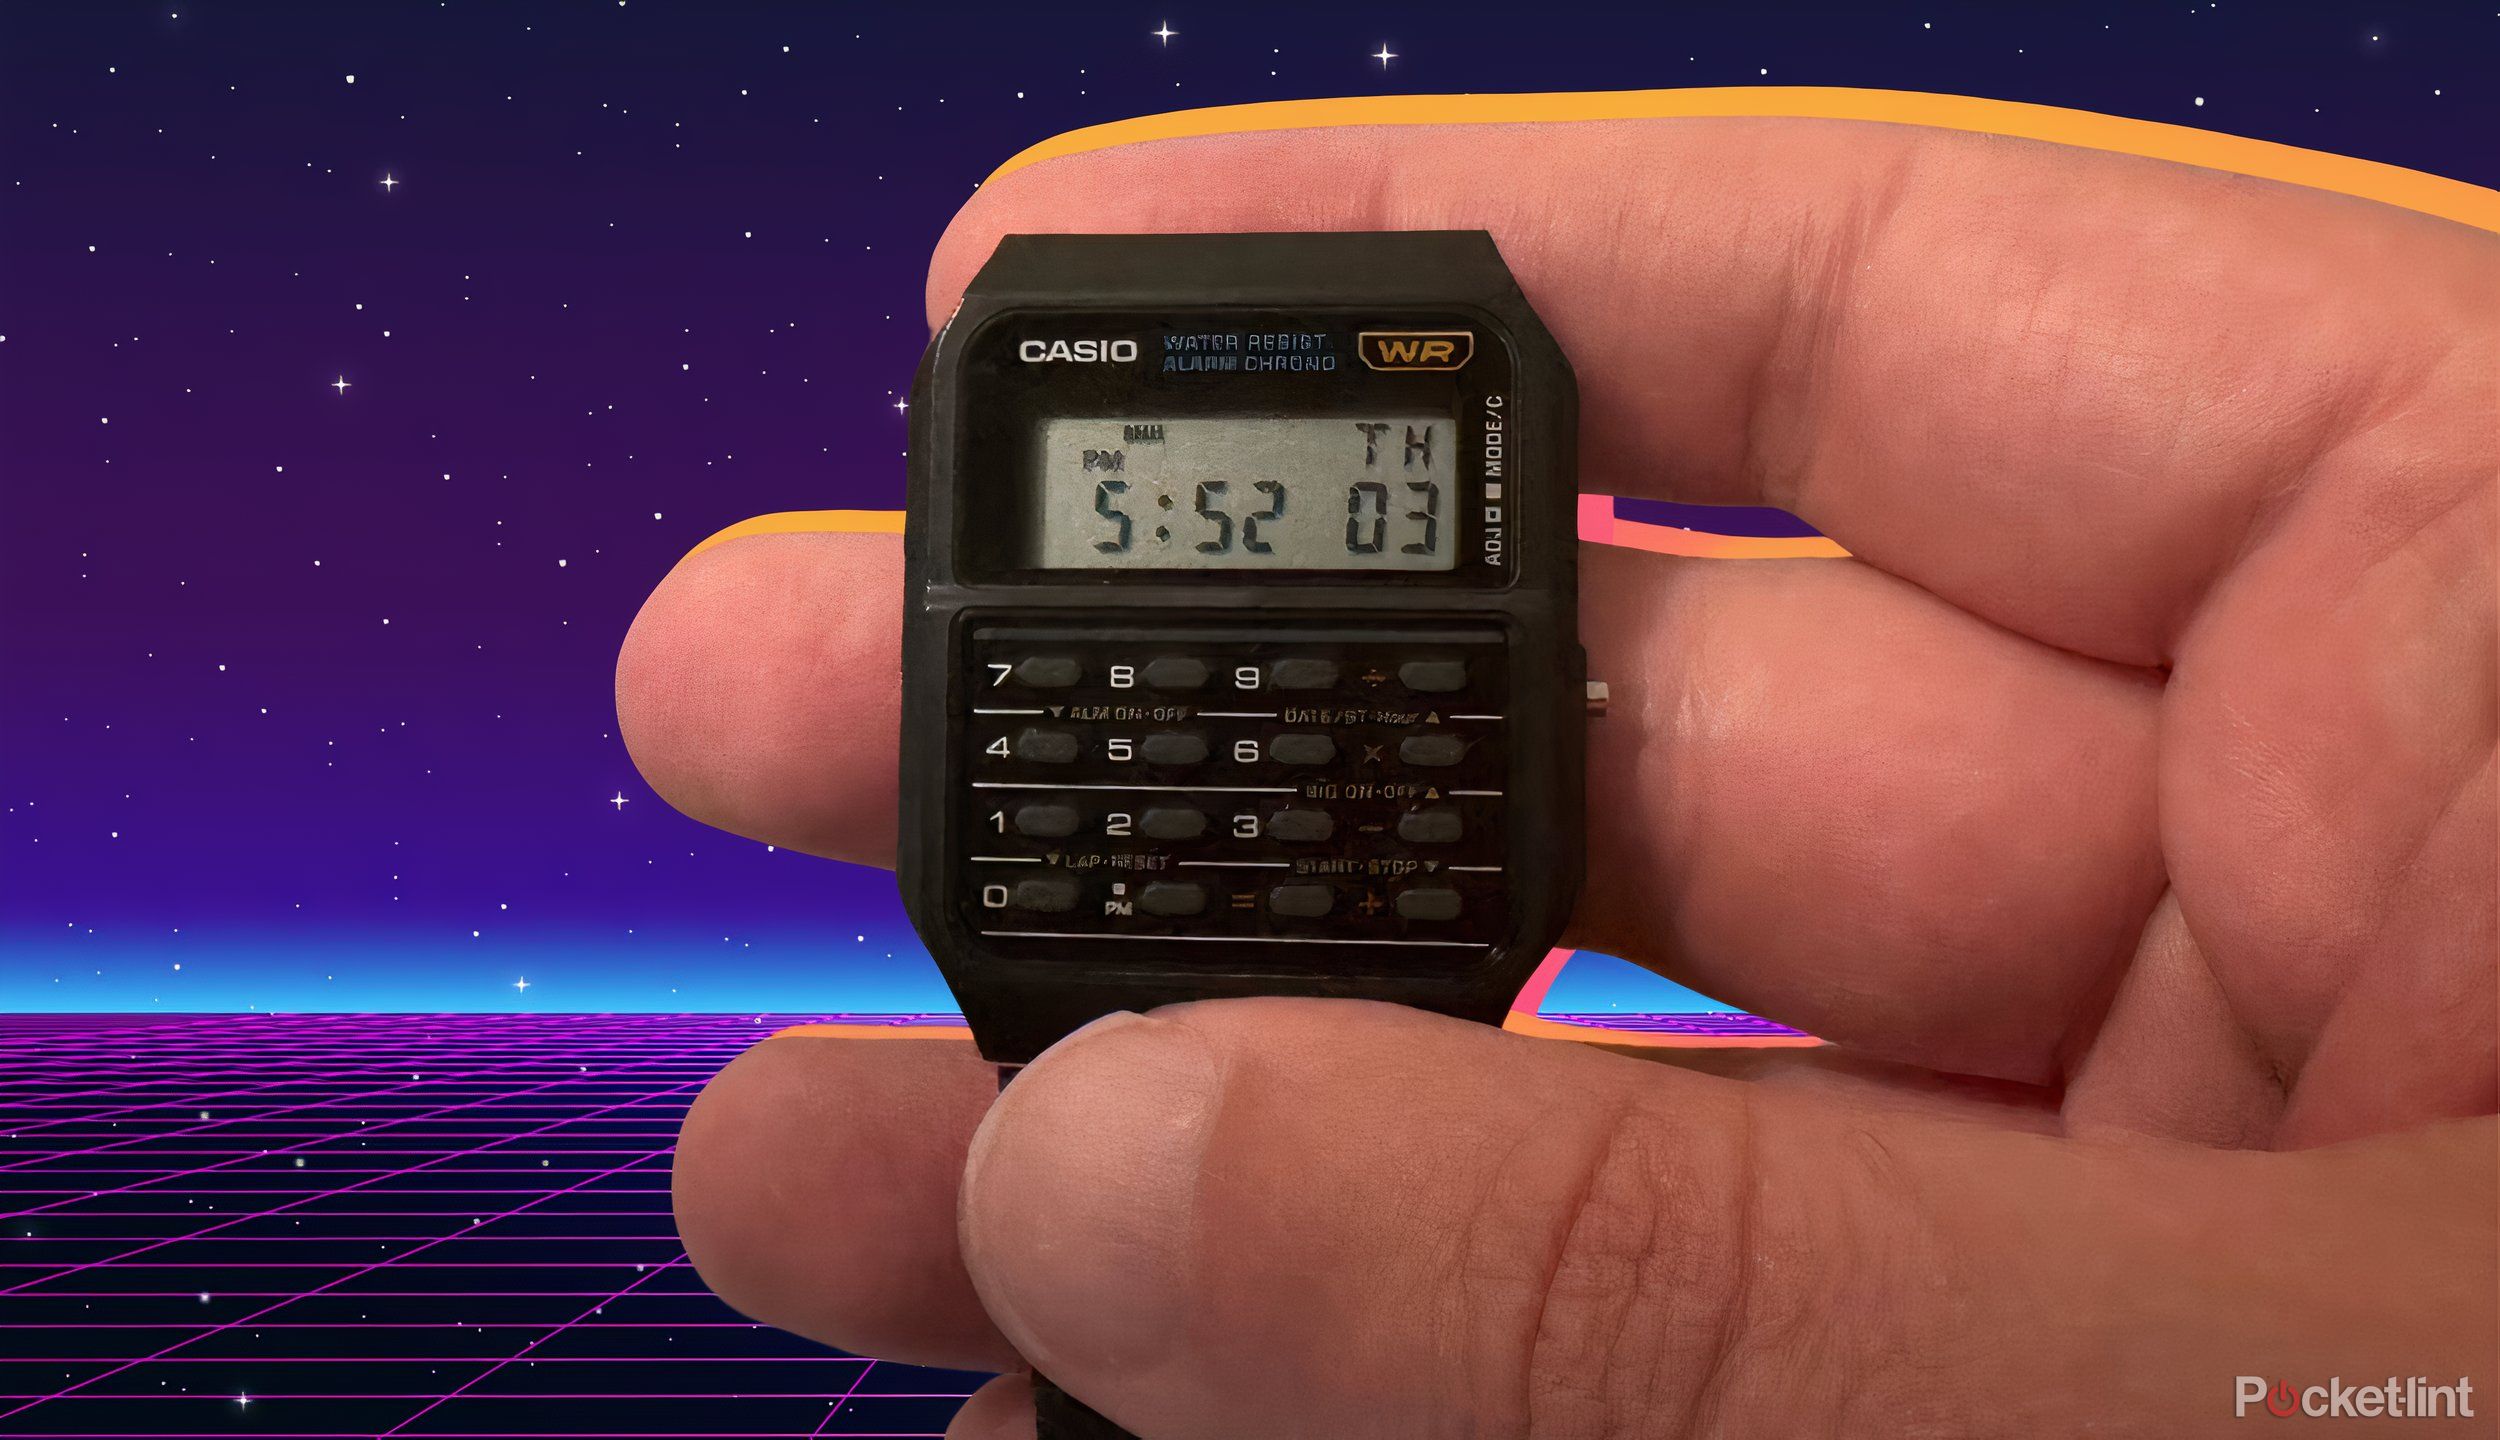 Casio calculator watch